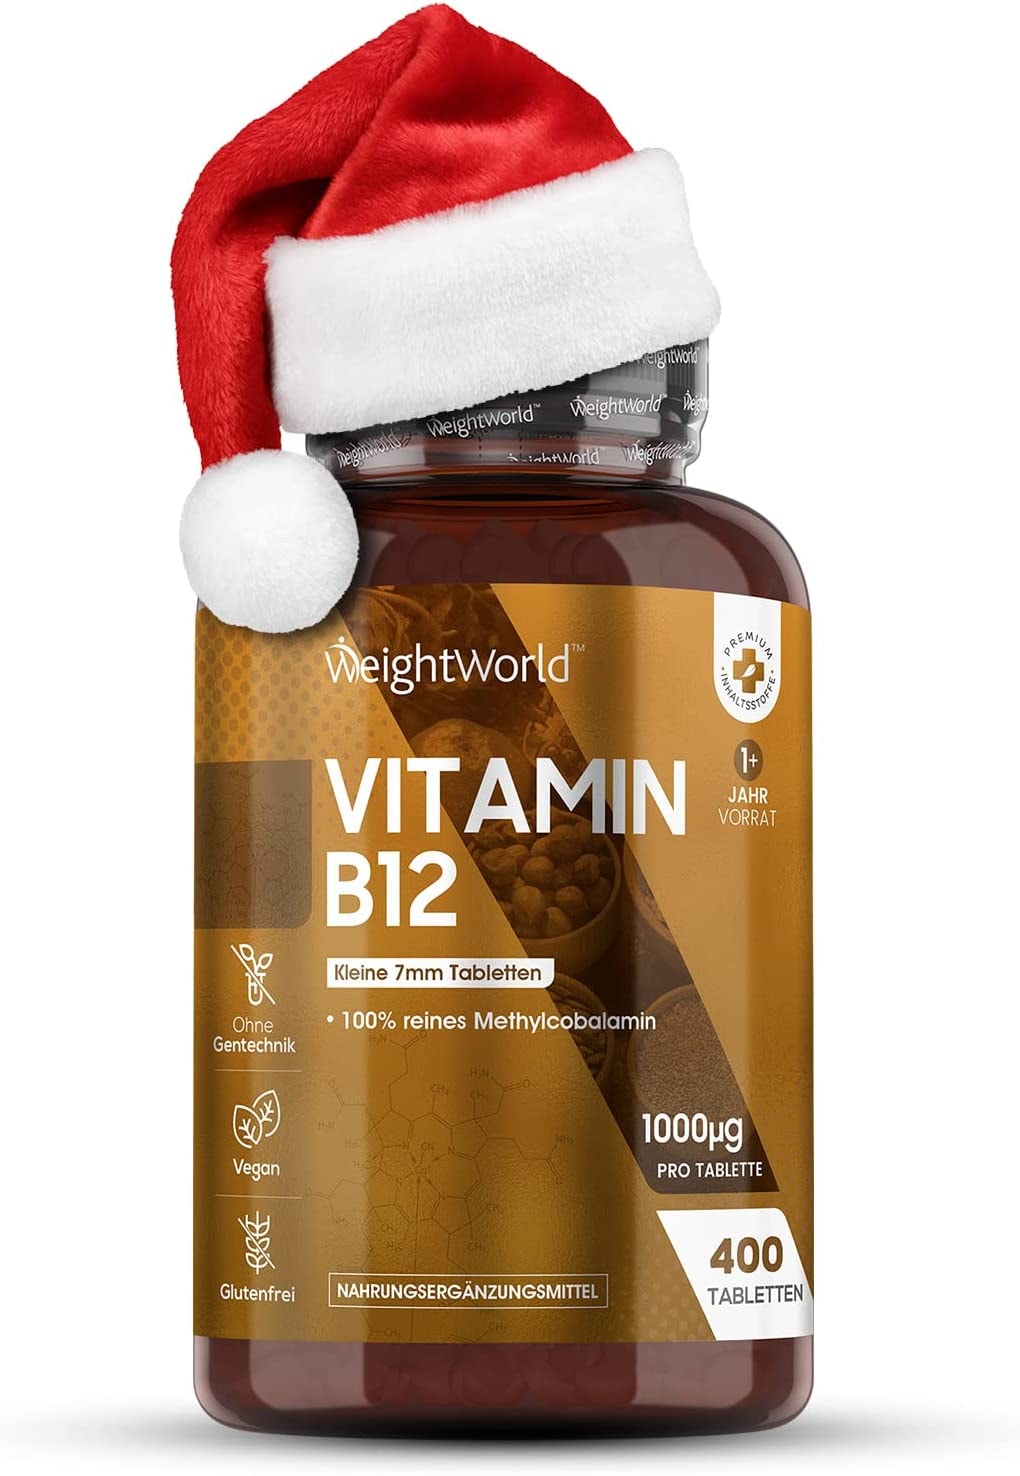 WeightWorld Vitamin B12 1000µg Tabletten - 400 Stück - Methylcobalamin B12 - Vegan & Vegetarisch - 1 Vit B12 Tablette alle 2 Tage - Geprüfte & Natürliche Inhaltsstoffe - Pure Vit B12 Tabletten